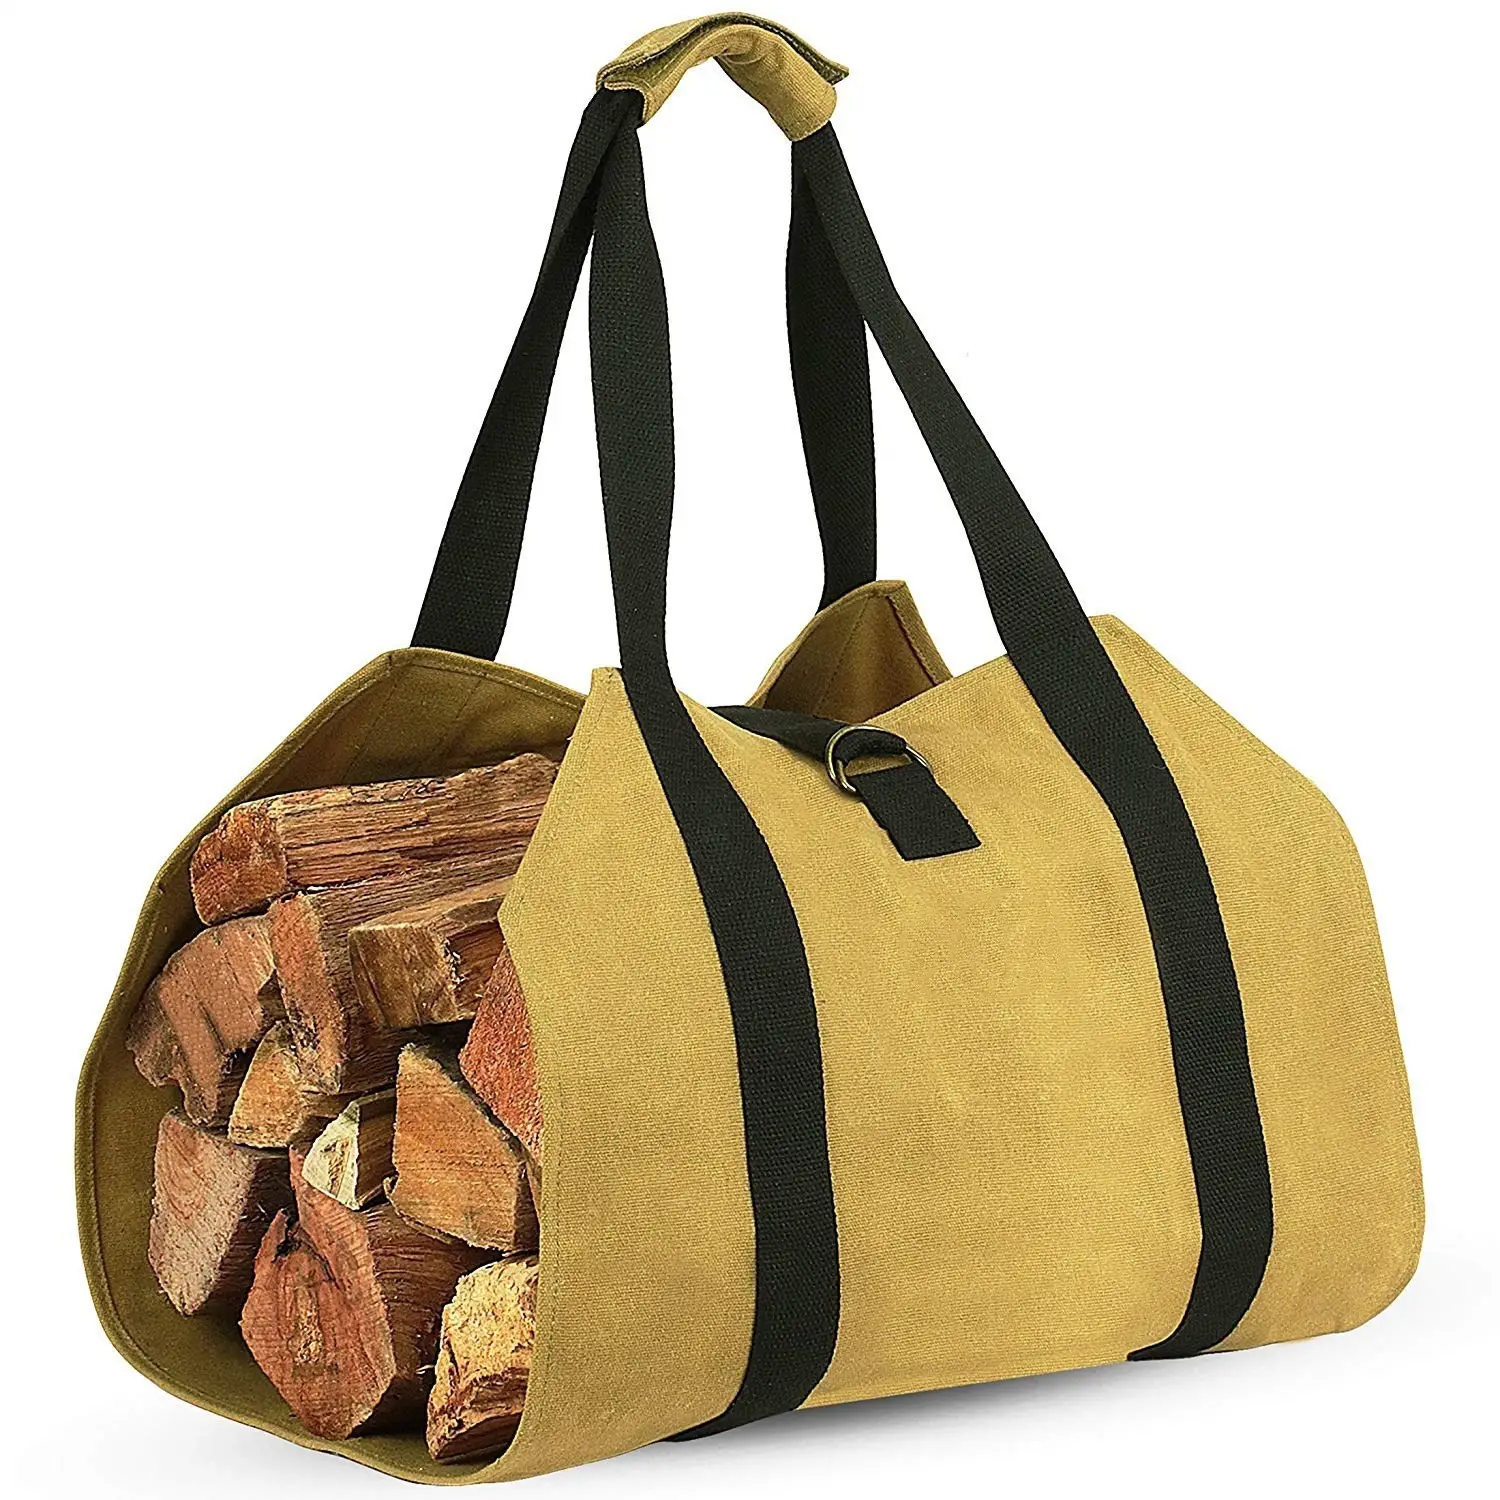 حقيبة محمولة من قماش الكانفاس لحمل حطب الأخشاب مع مقابض لحمل الألواح الخشبية في المنزل أو التخييم حقيبة حمل أحزمة الأخشاب